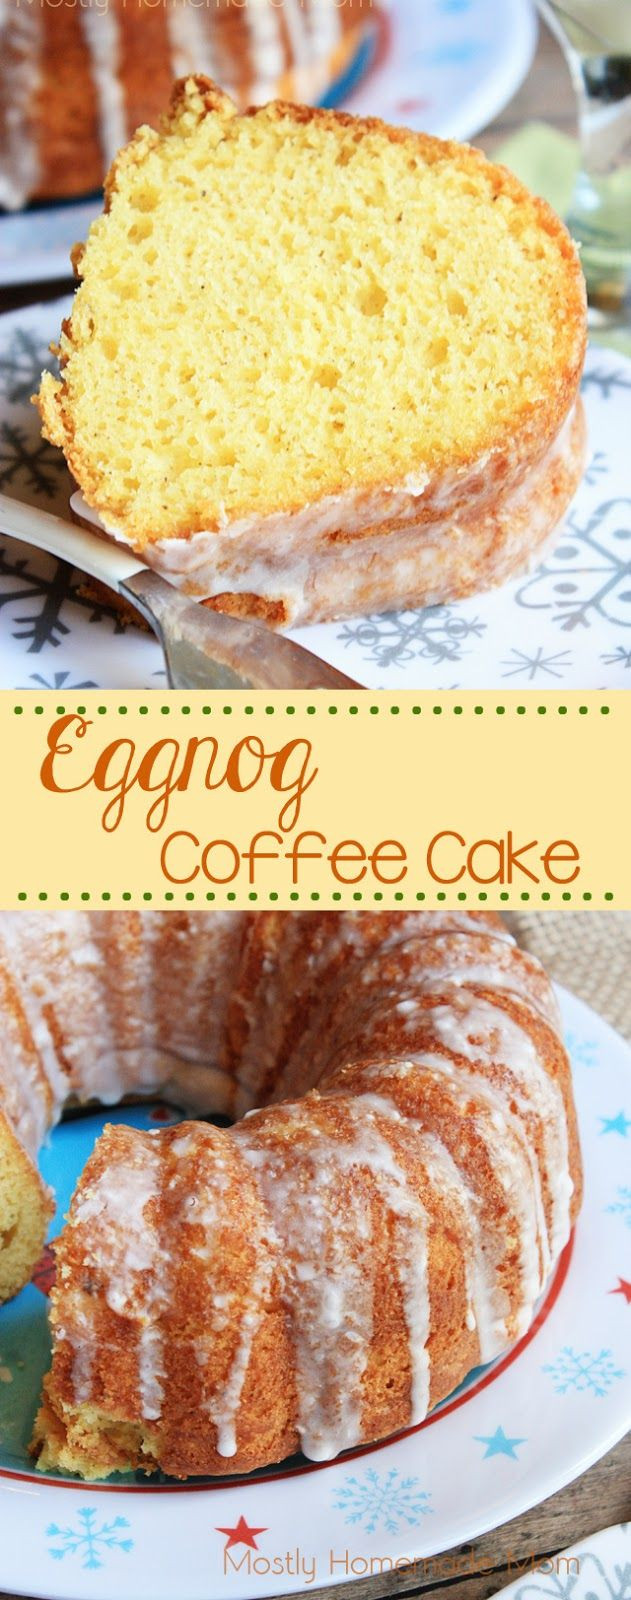 Eggnog Pound Cake Recipes From Scratch
 Eggnog Coffee Cake Recipe